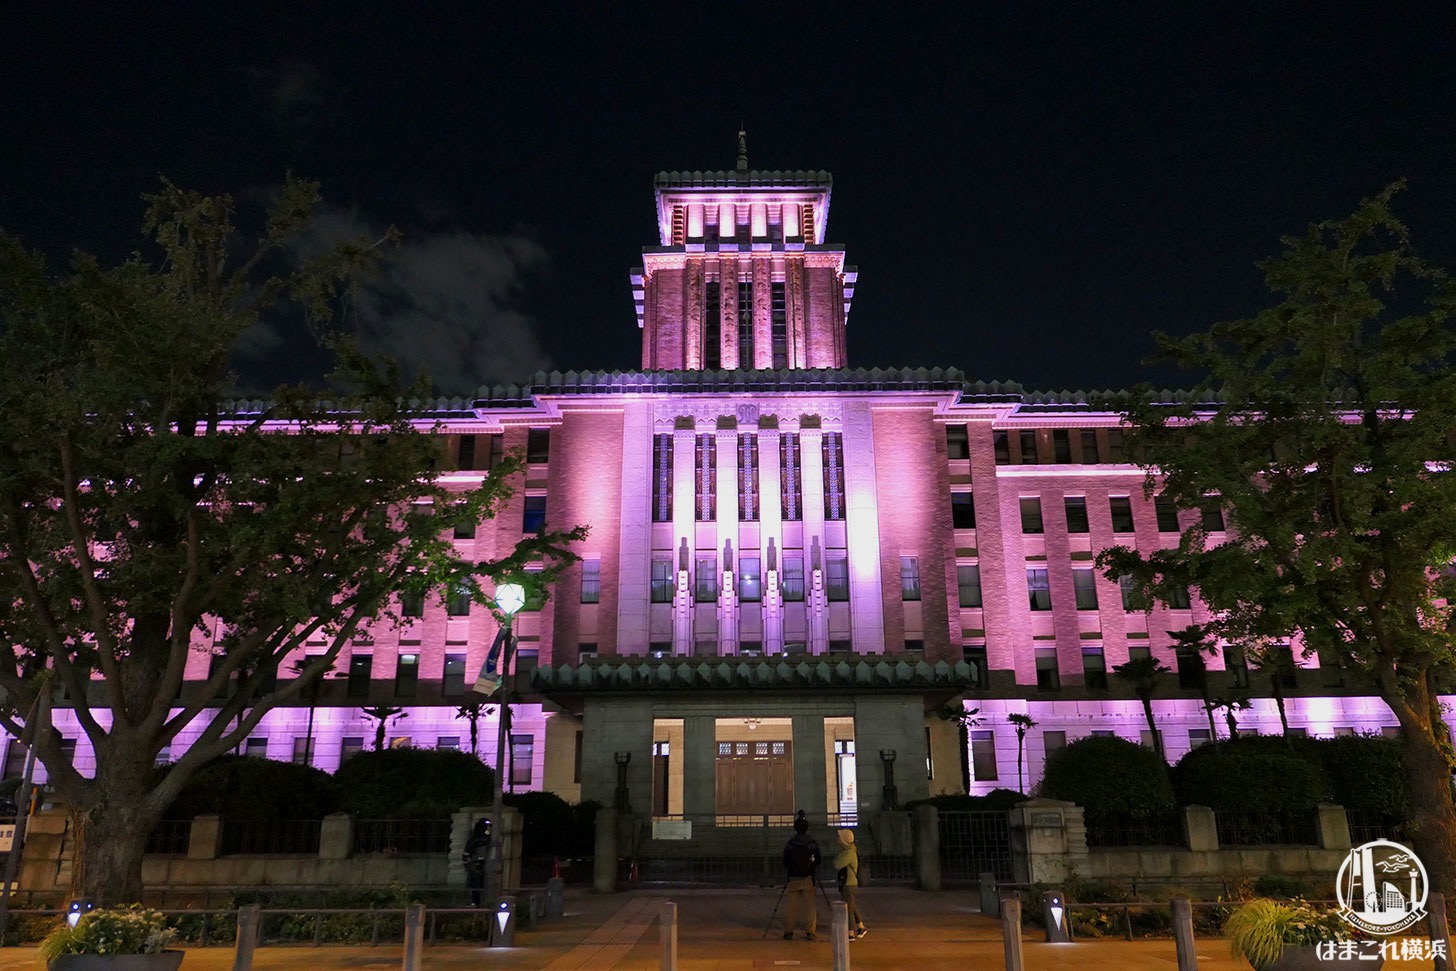 神奈川県庁本庁舎 特別演出ライトアップ